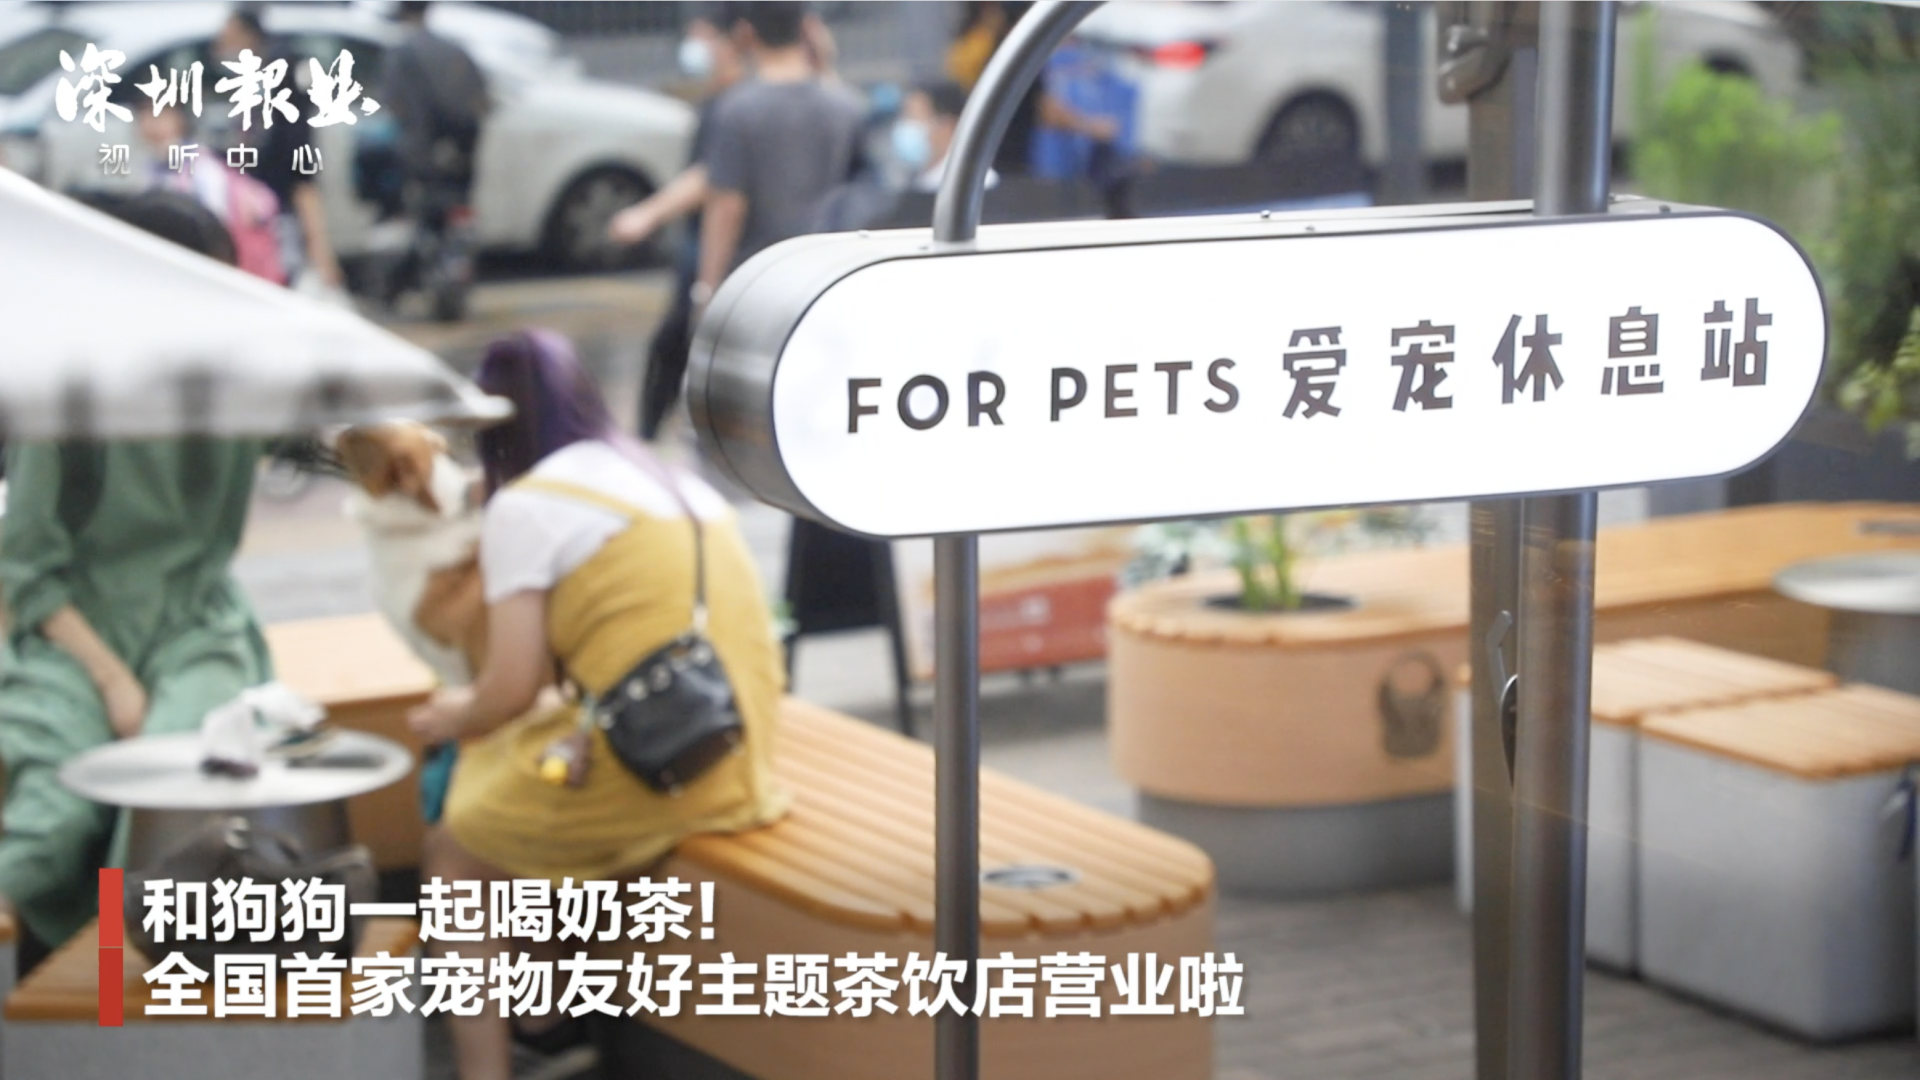 带狗狗一起喝奶茶 全国首家宠物友好主题茶饮店落地深圳